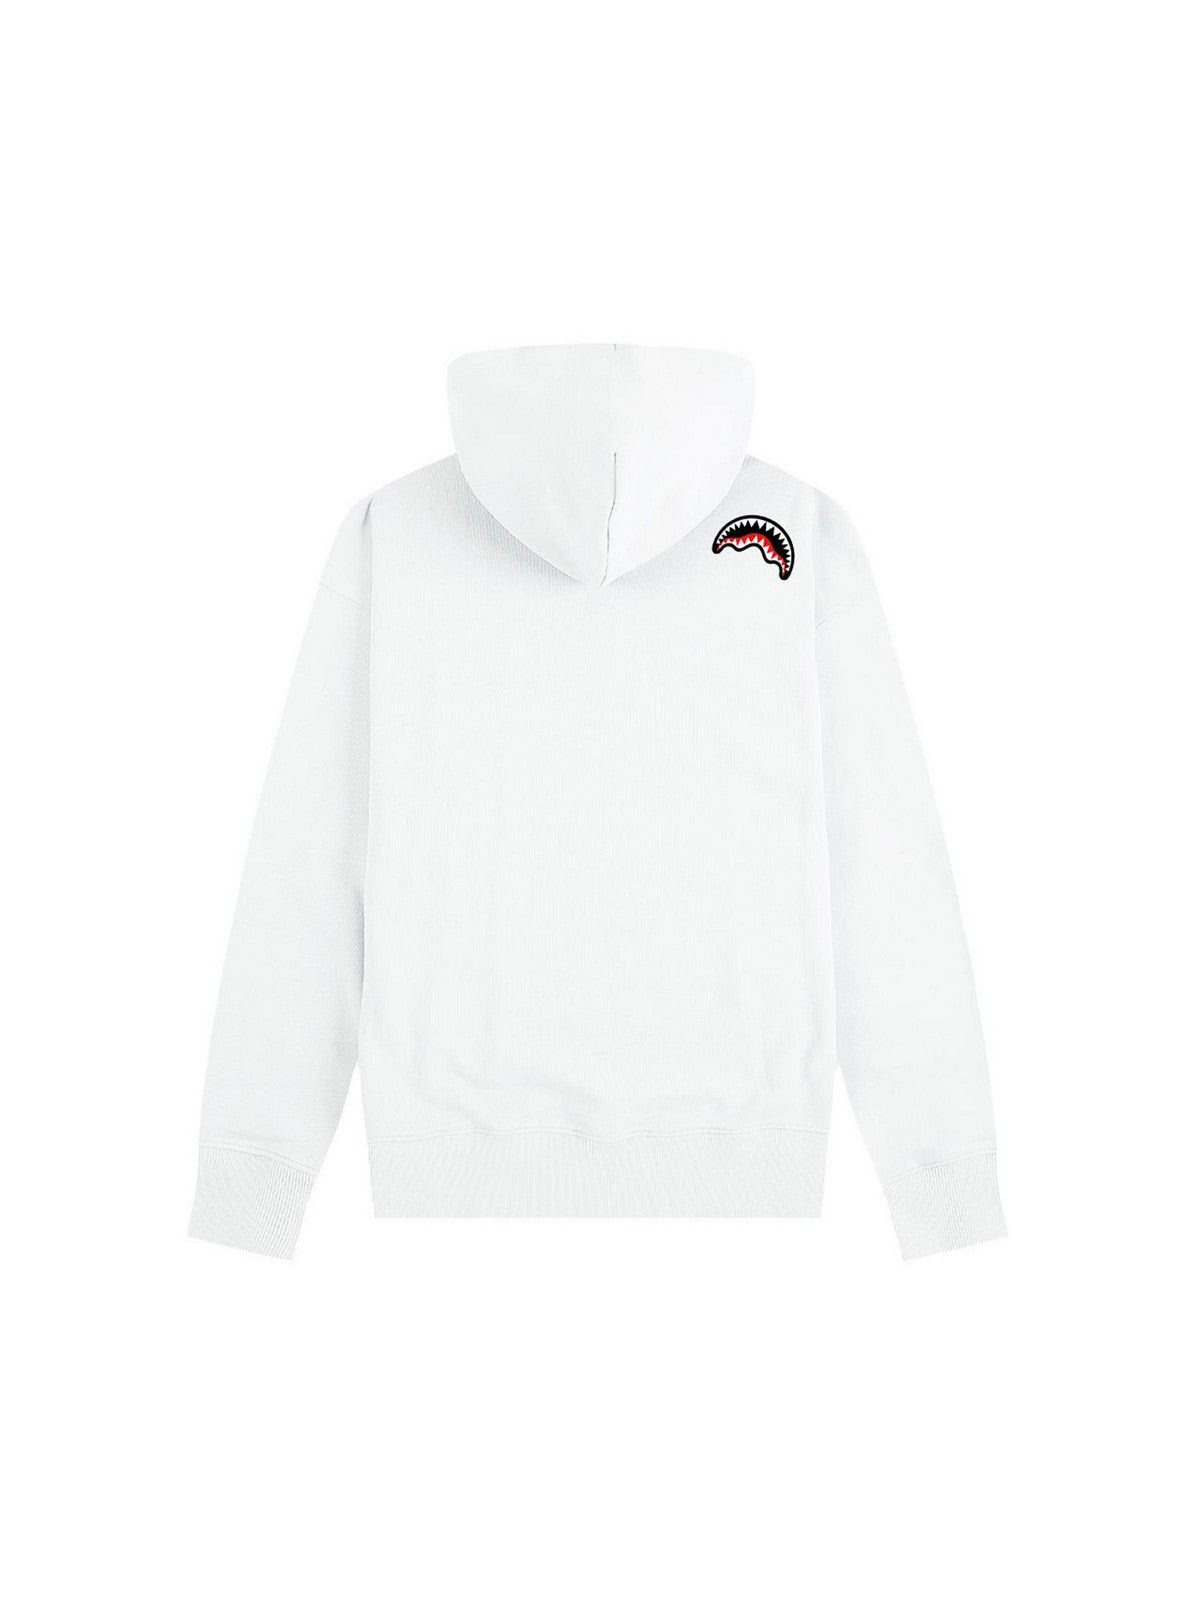 SPRAYGROUND Sweatshirt Hommes SP364WHT Blanc